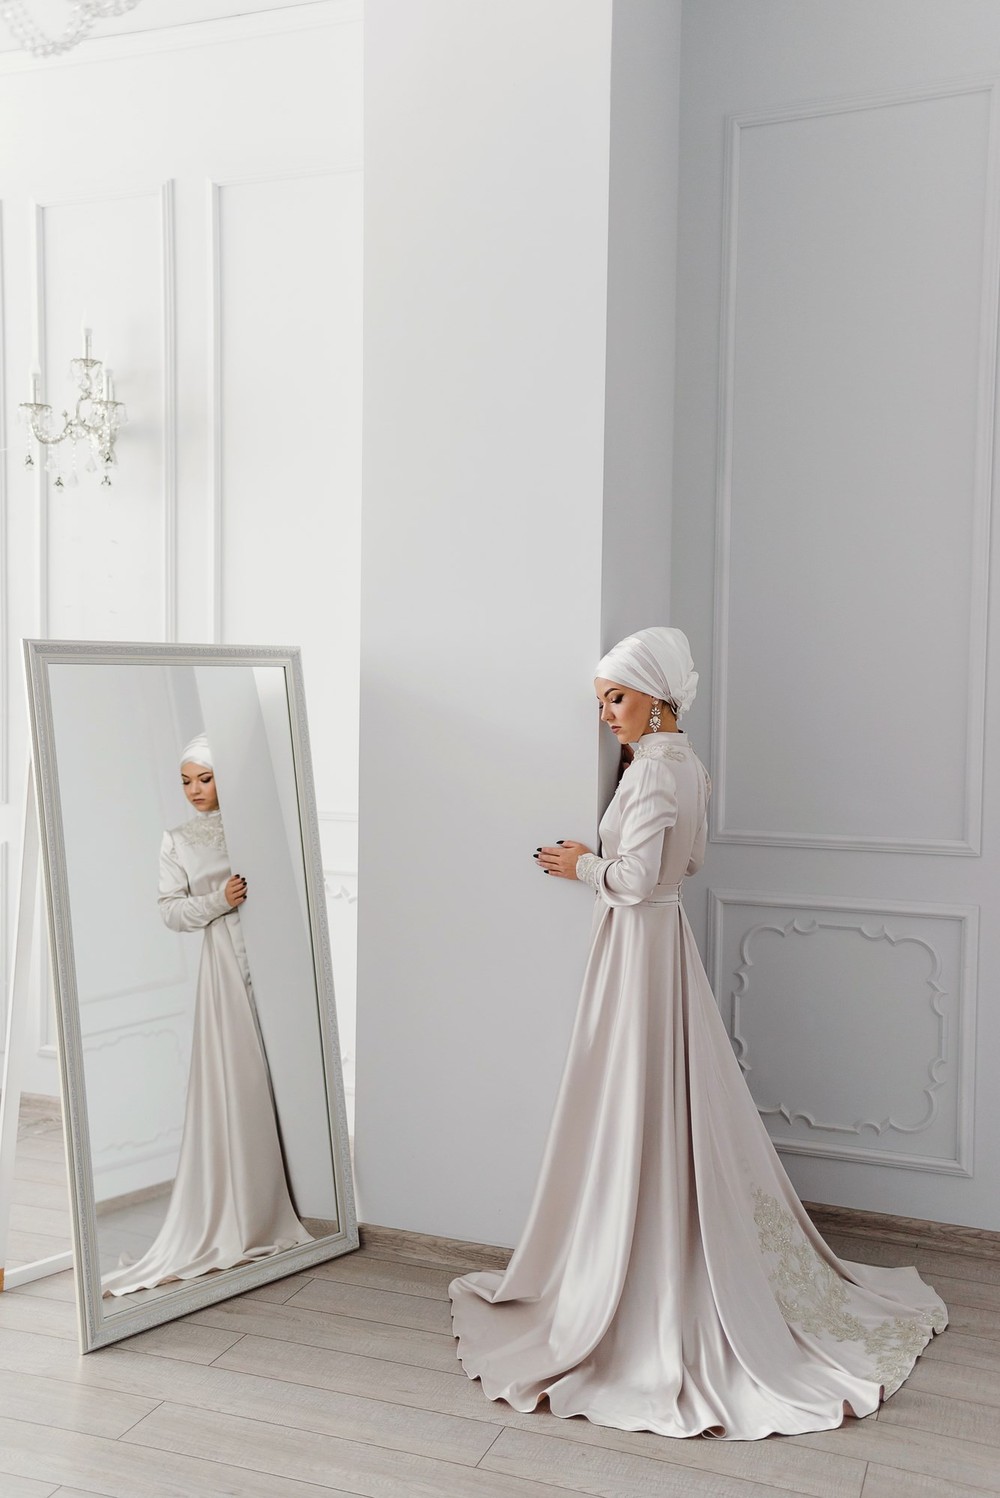 Коллекция платьев для никаха от студии Izar, 2020